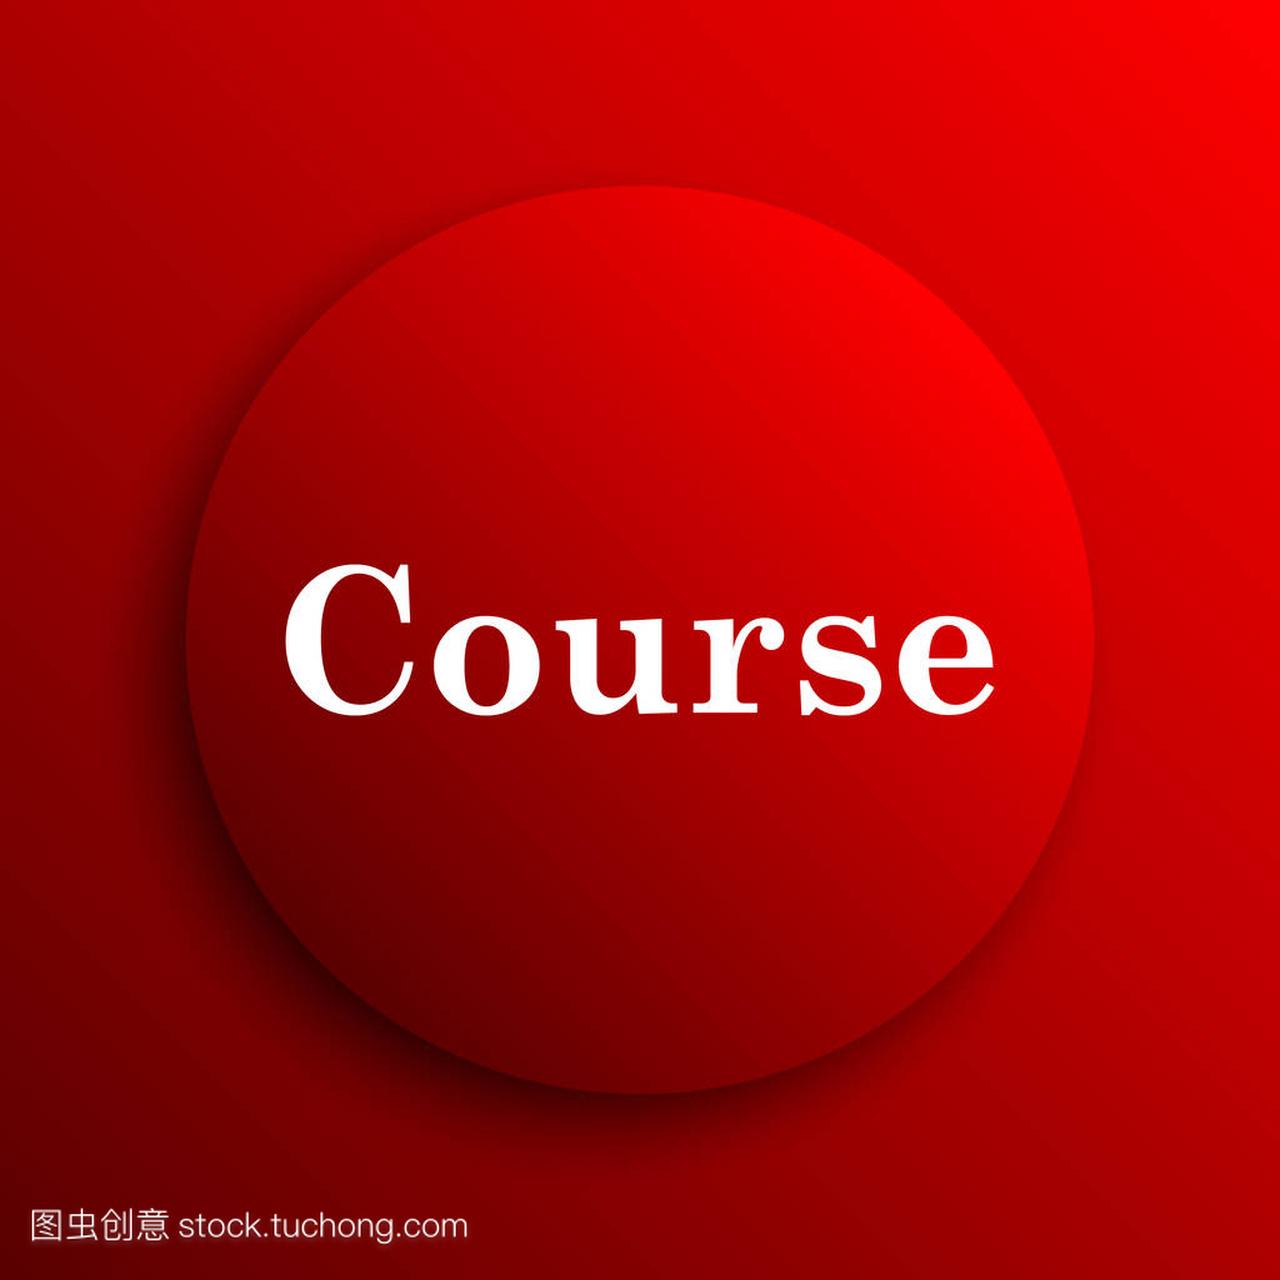 Course icon